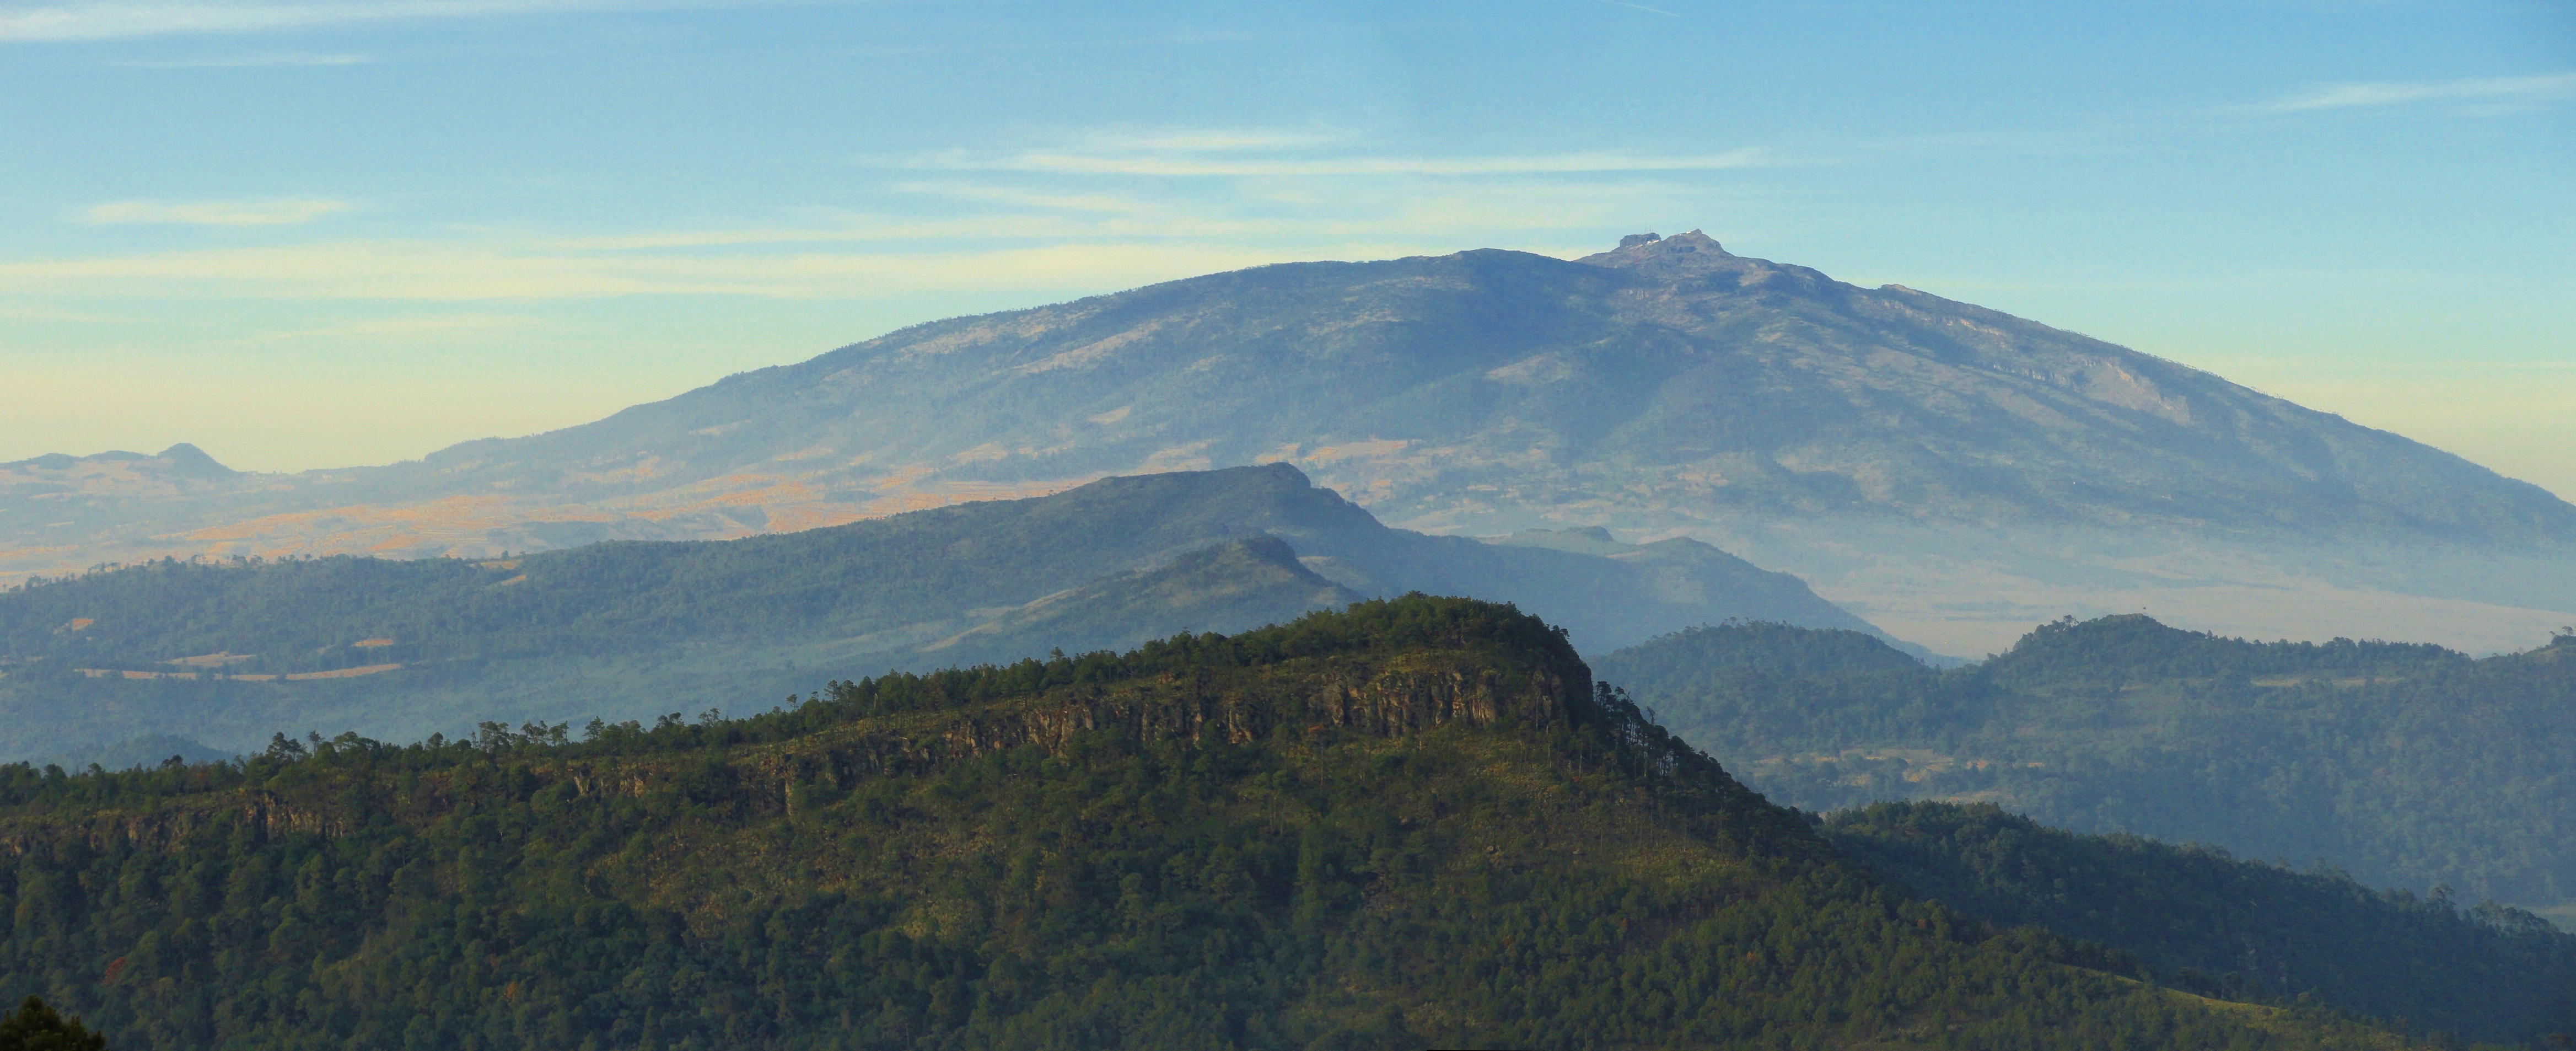 Volcan de Cofre de Perote - panoramio.jpg